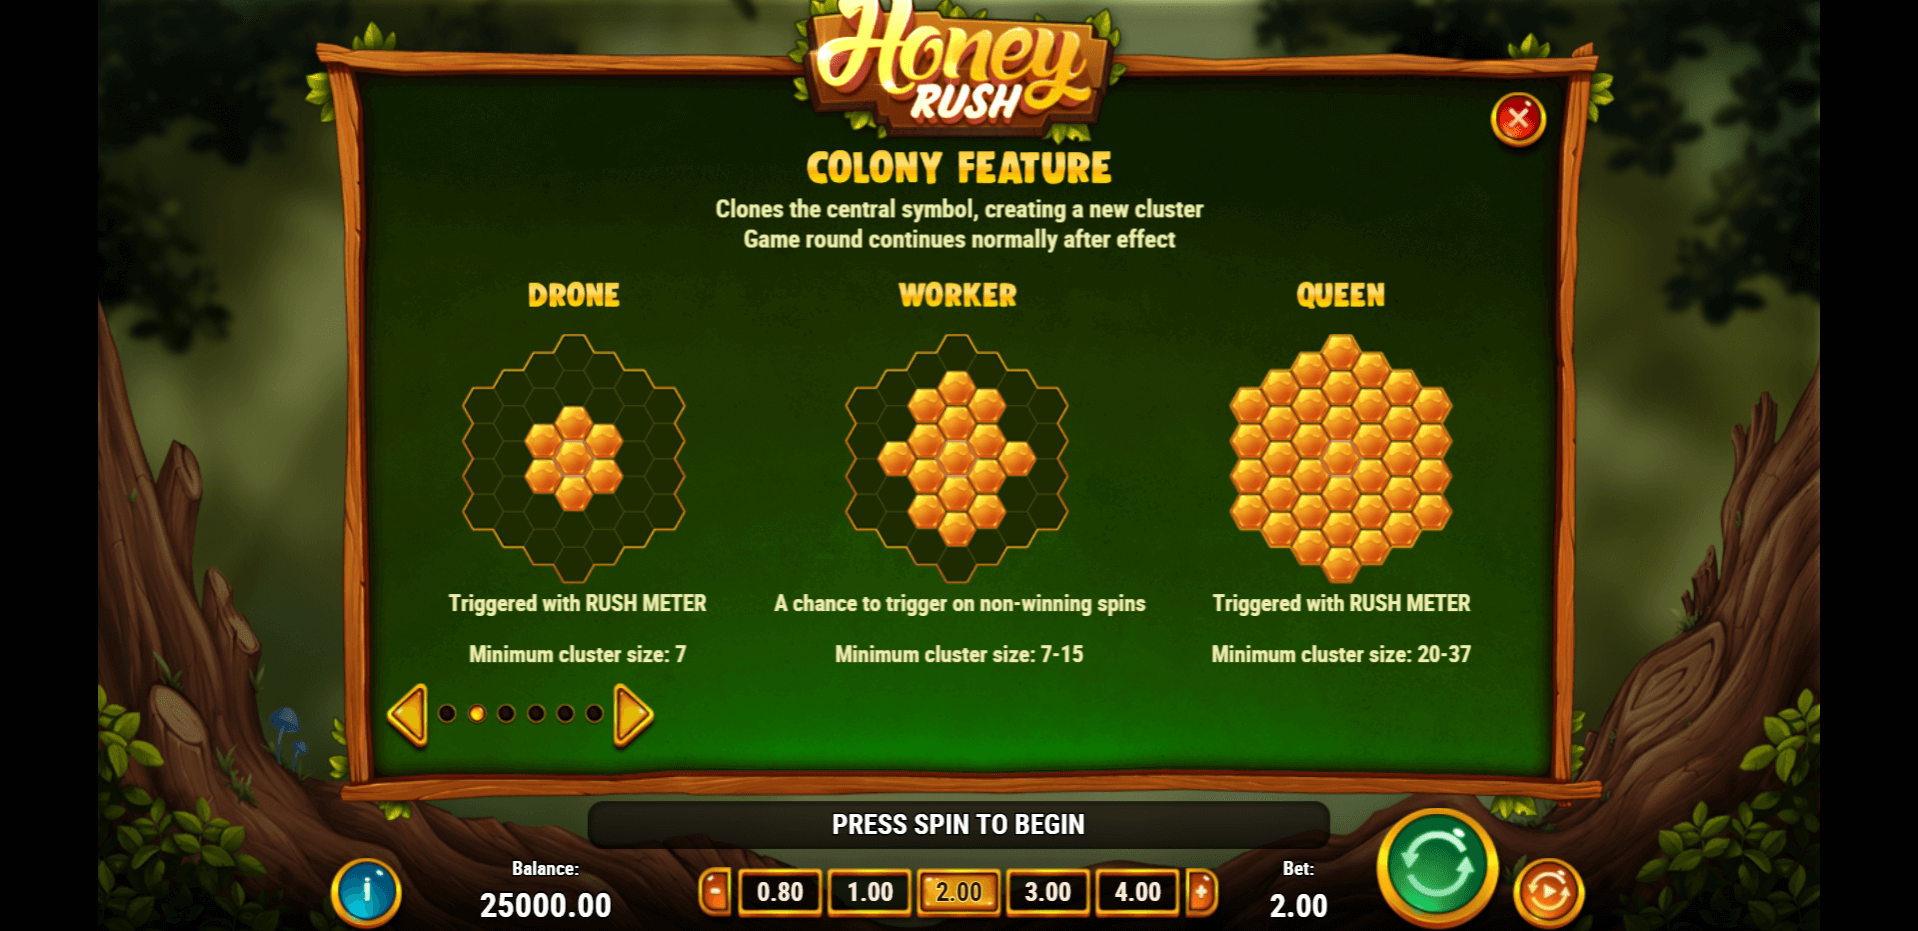 honey rush slot machine detail image 1